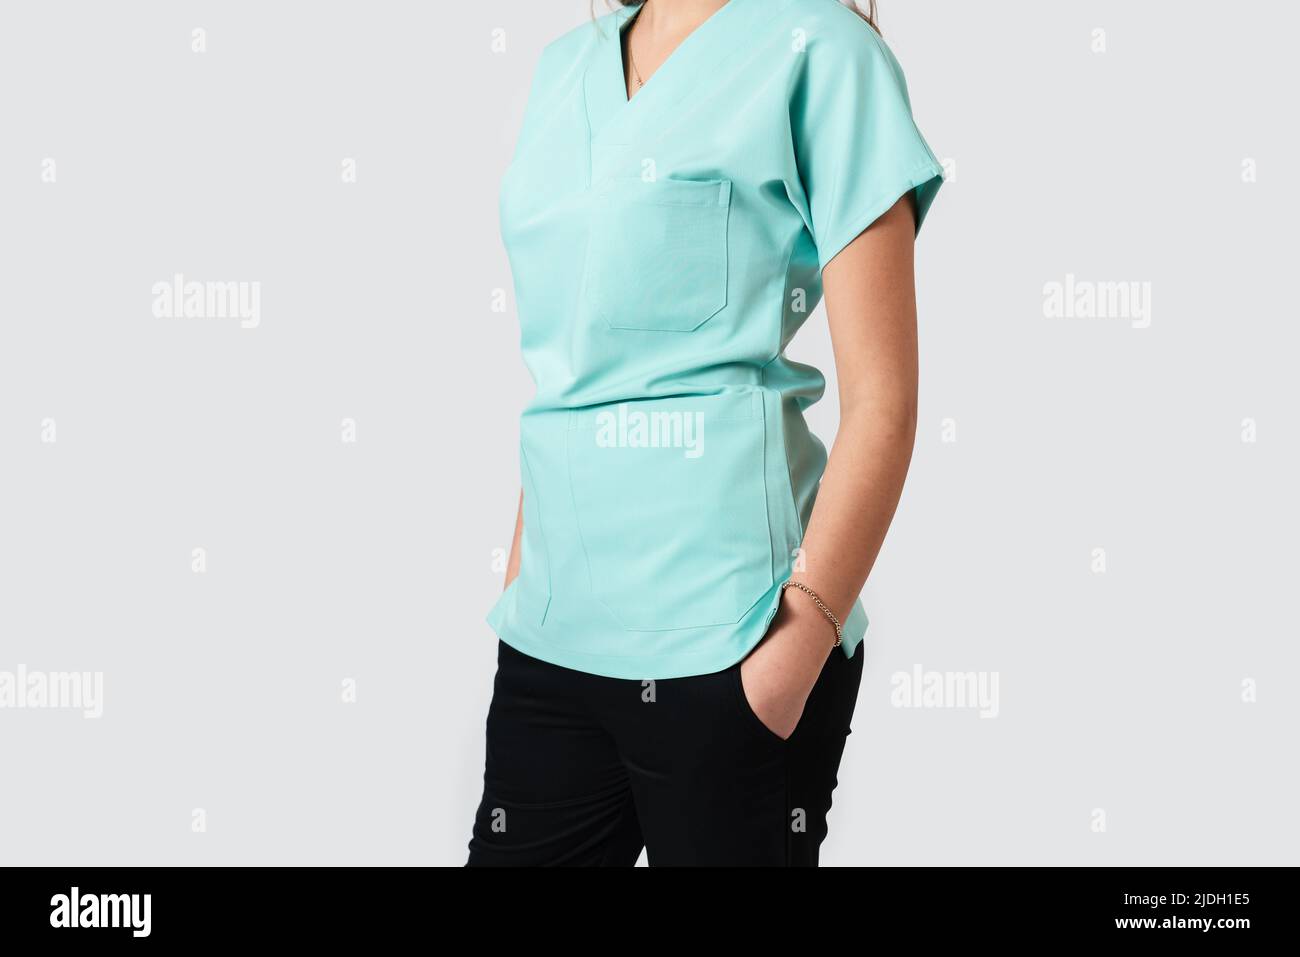 Ritratto di una donna medico o infermiera con uniforme medica turchese. Foto di alta qualità Foto Stock